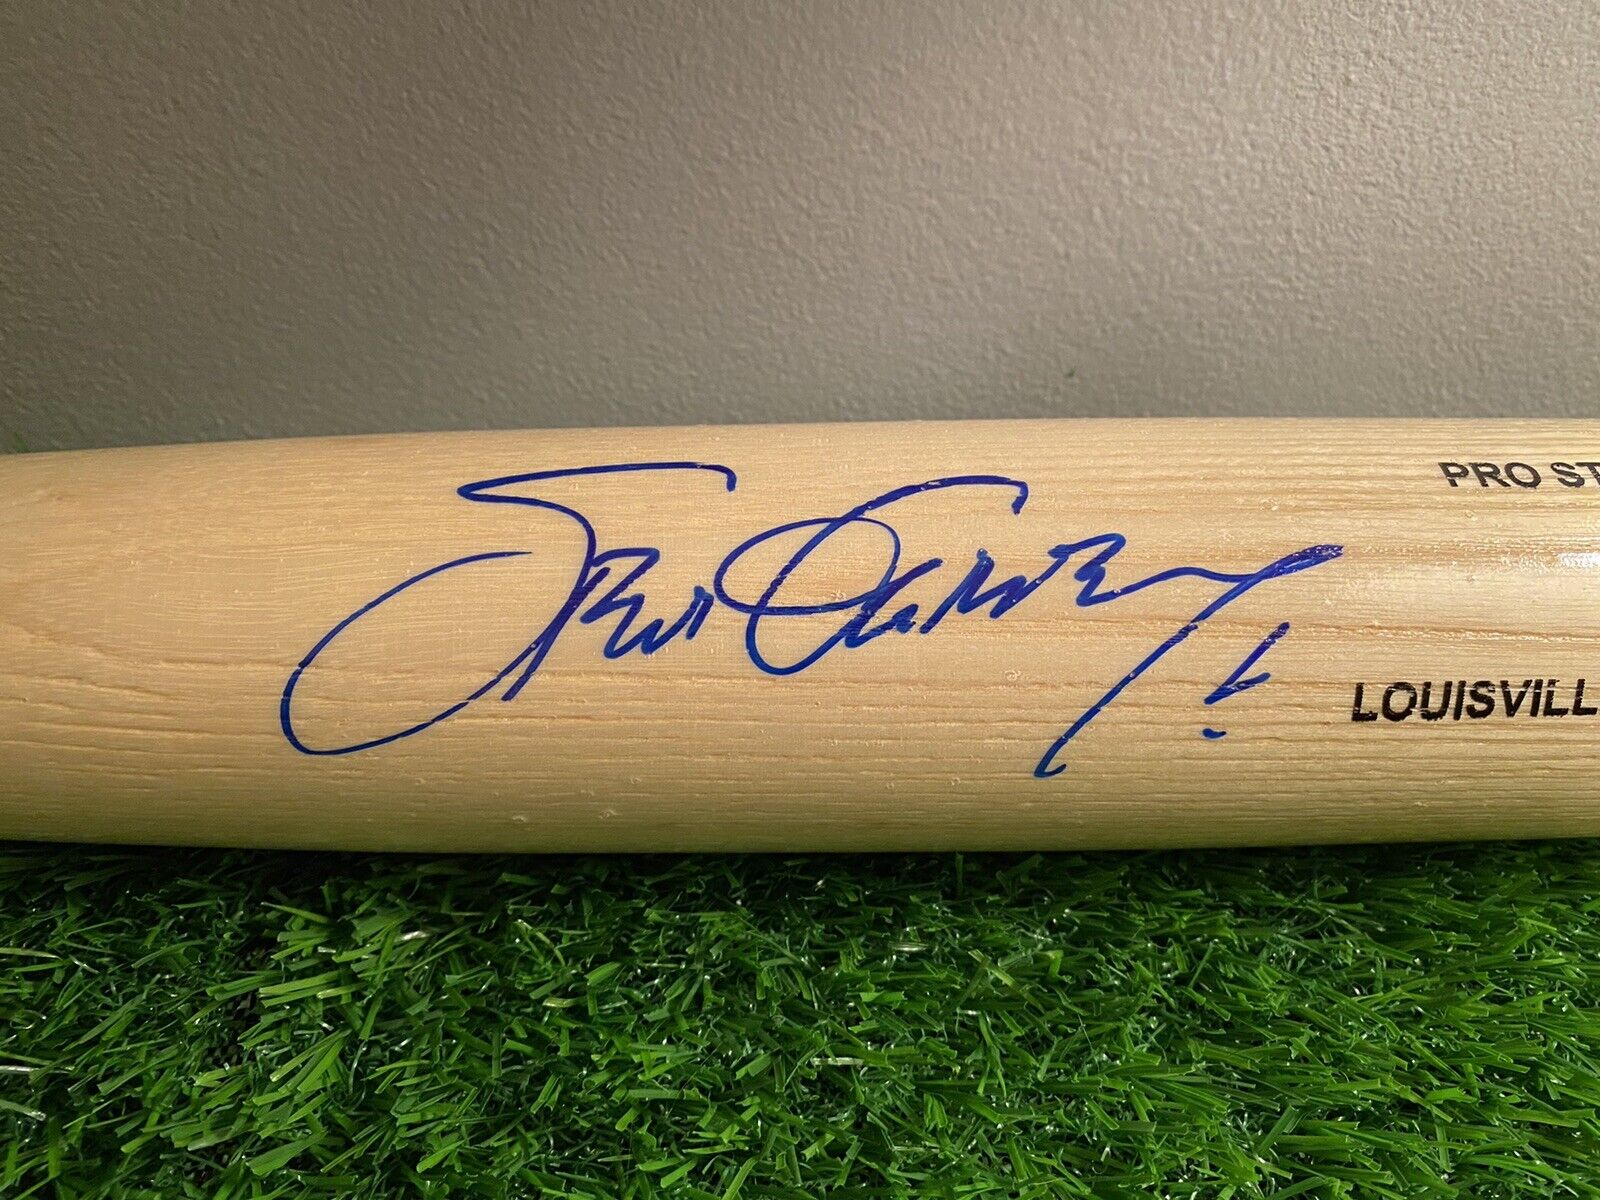 Steve Garvey Signed Baseball Bat full Size